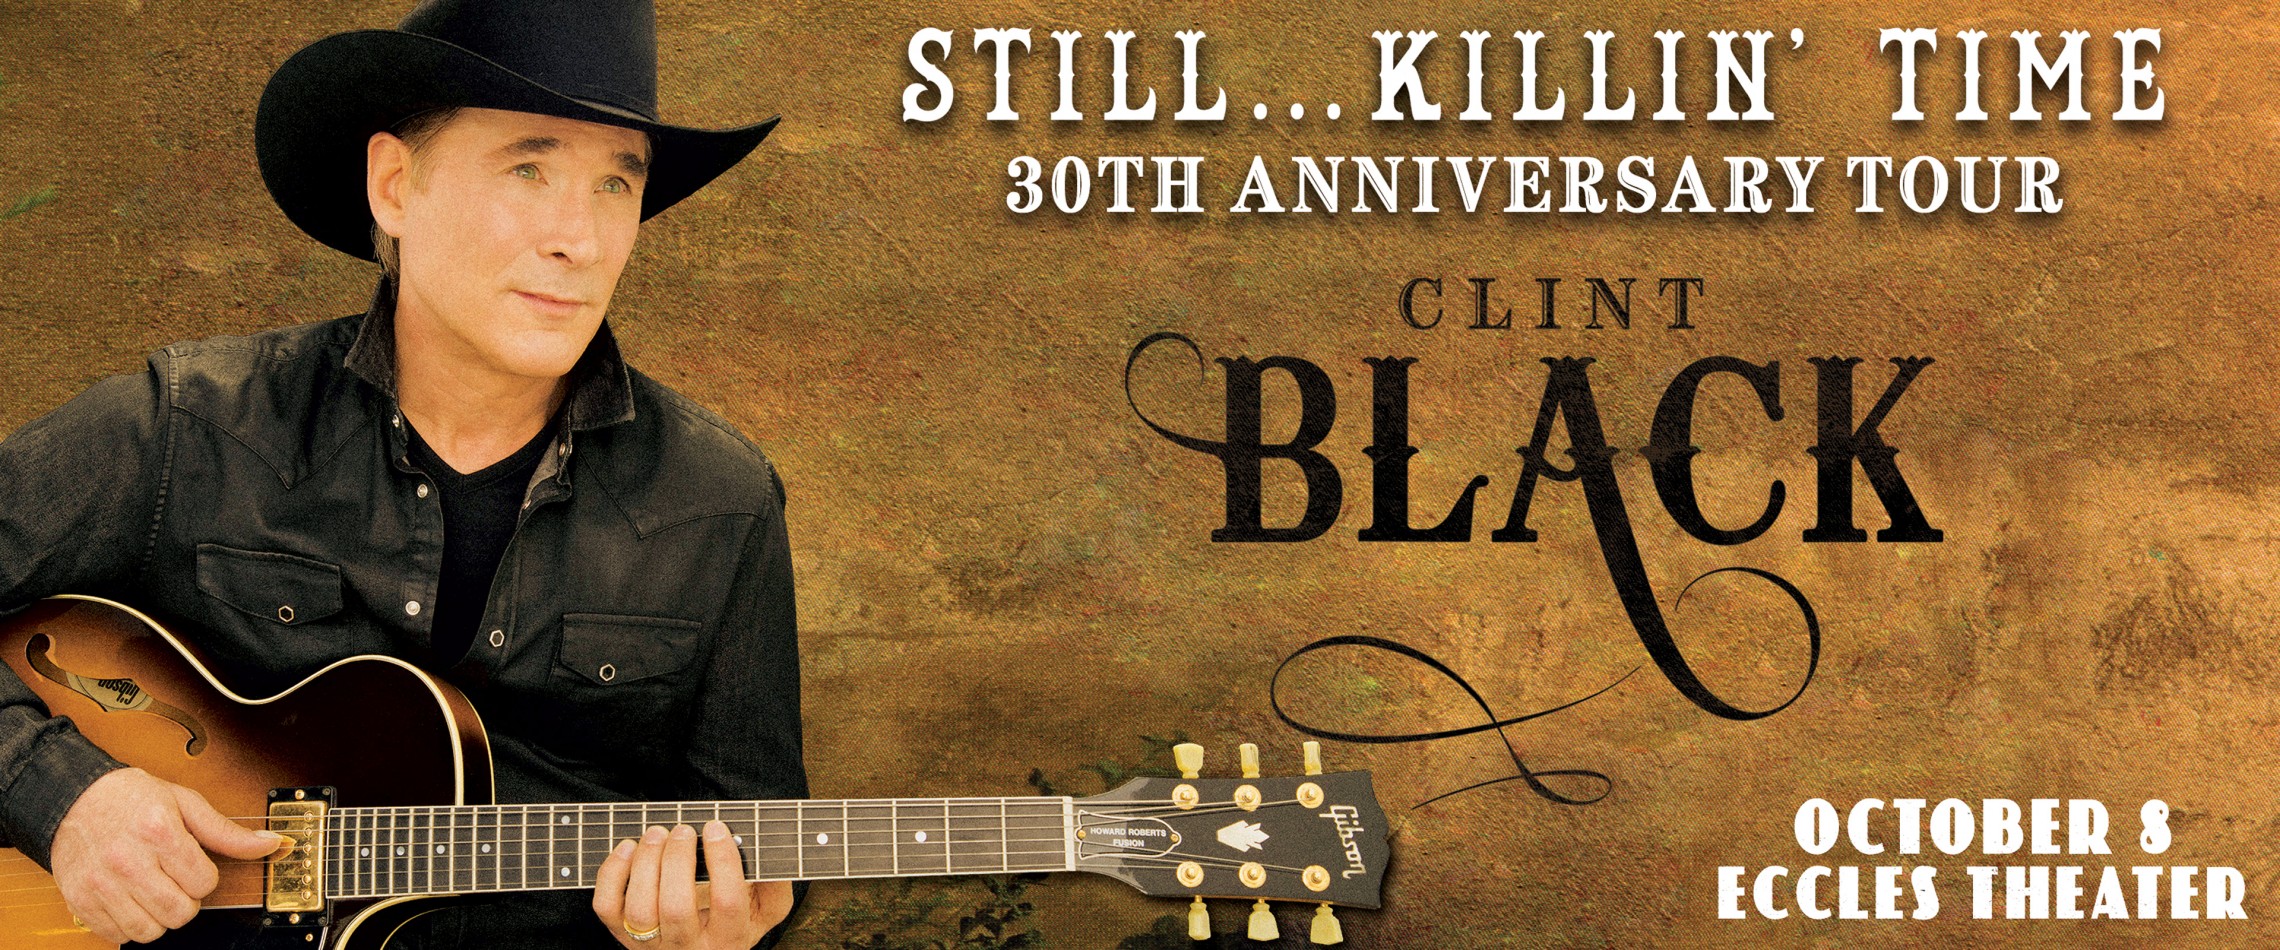 Clint Black - Live at the Eccles